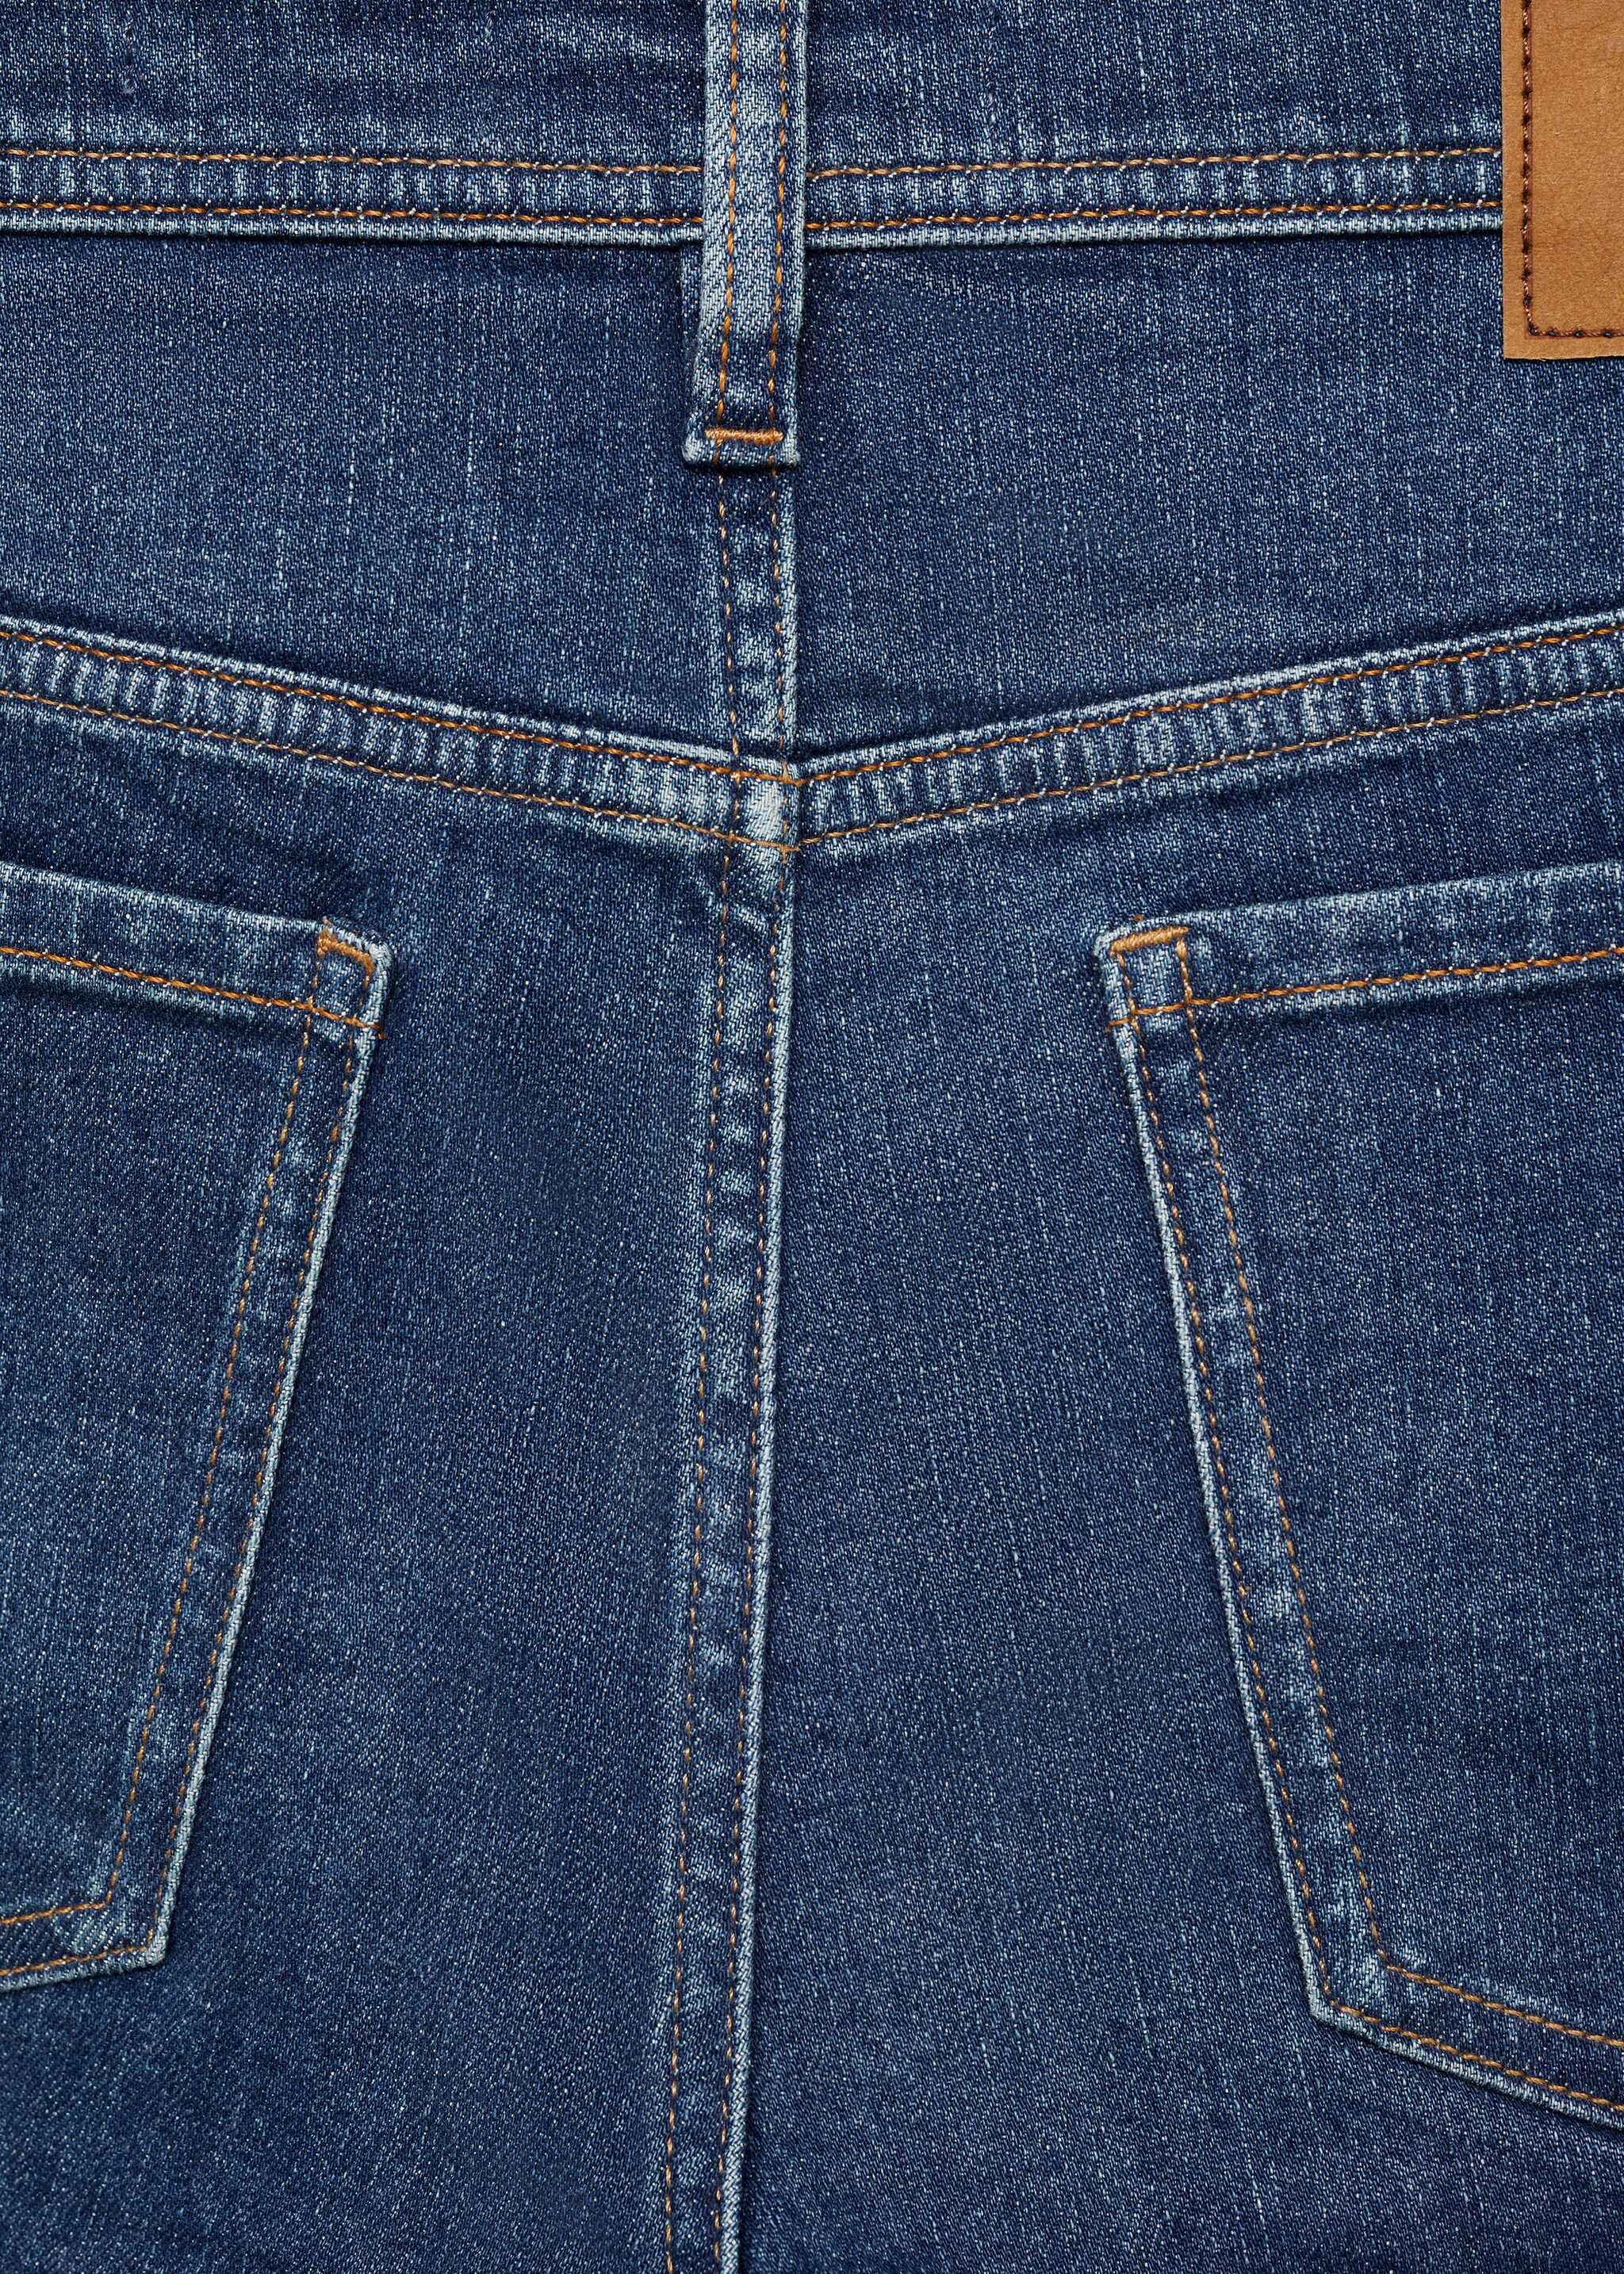 Jeans Jan slim fit  - Detalle del artículo 0